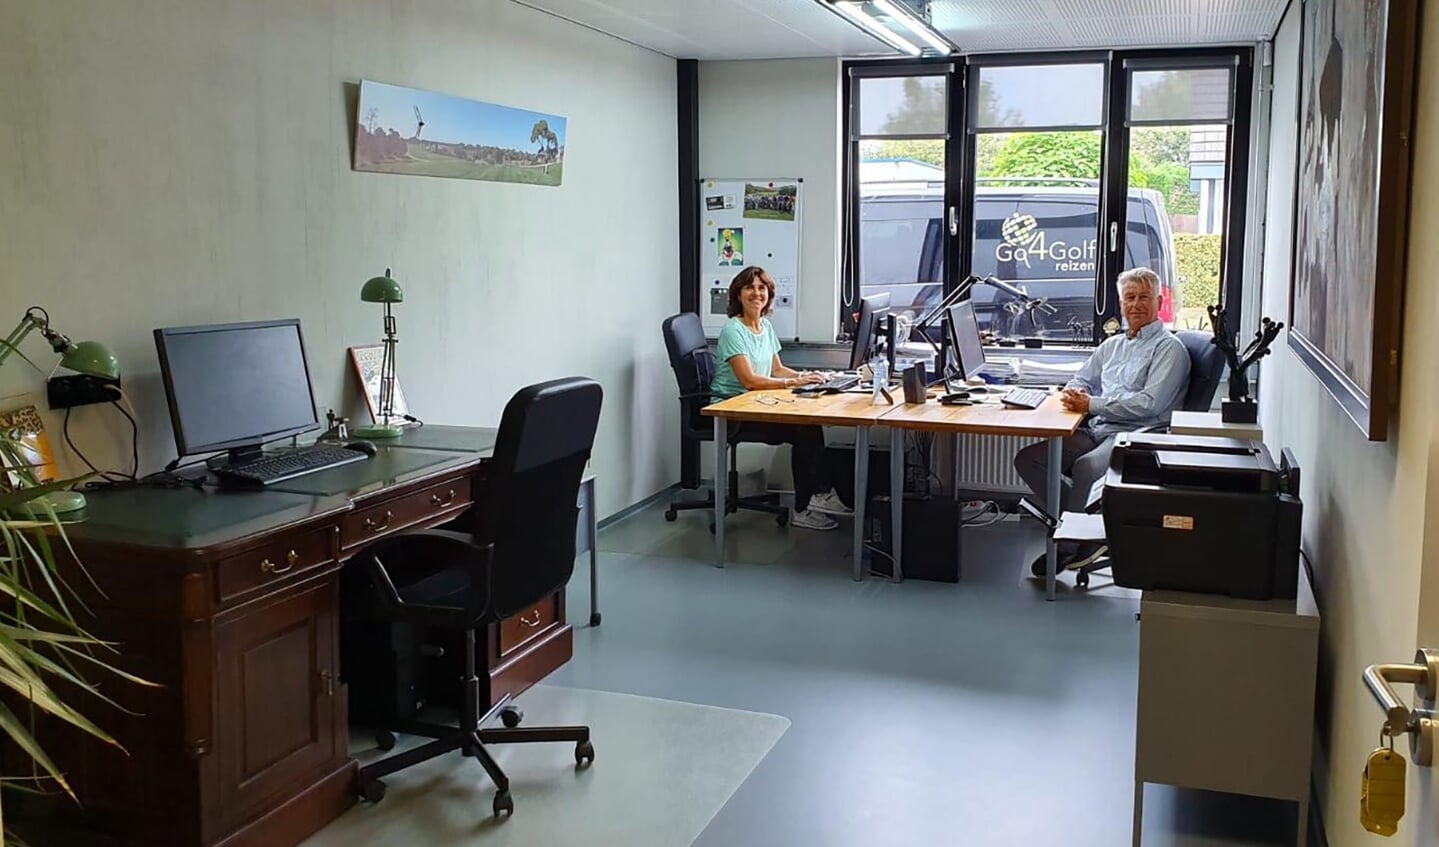 Peter en partner Bernadette van Pelt in het epicentrum van Go4Golf Reizen: het kantoor in Sleeuwijk.